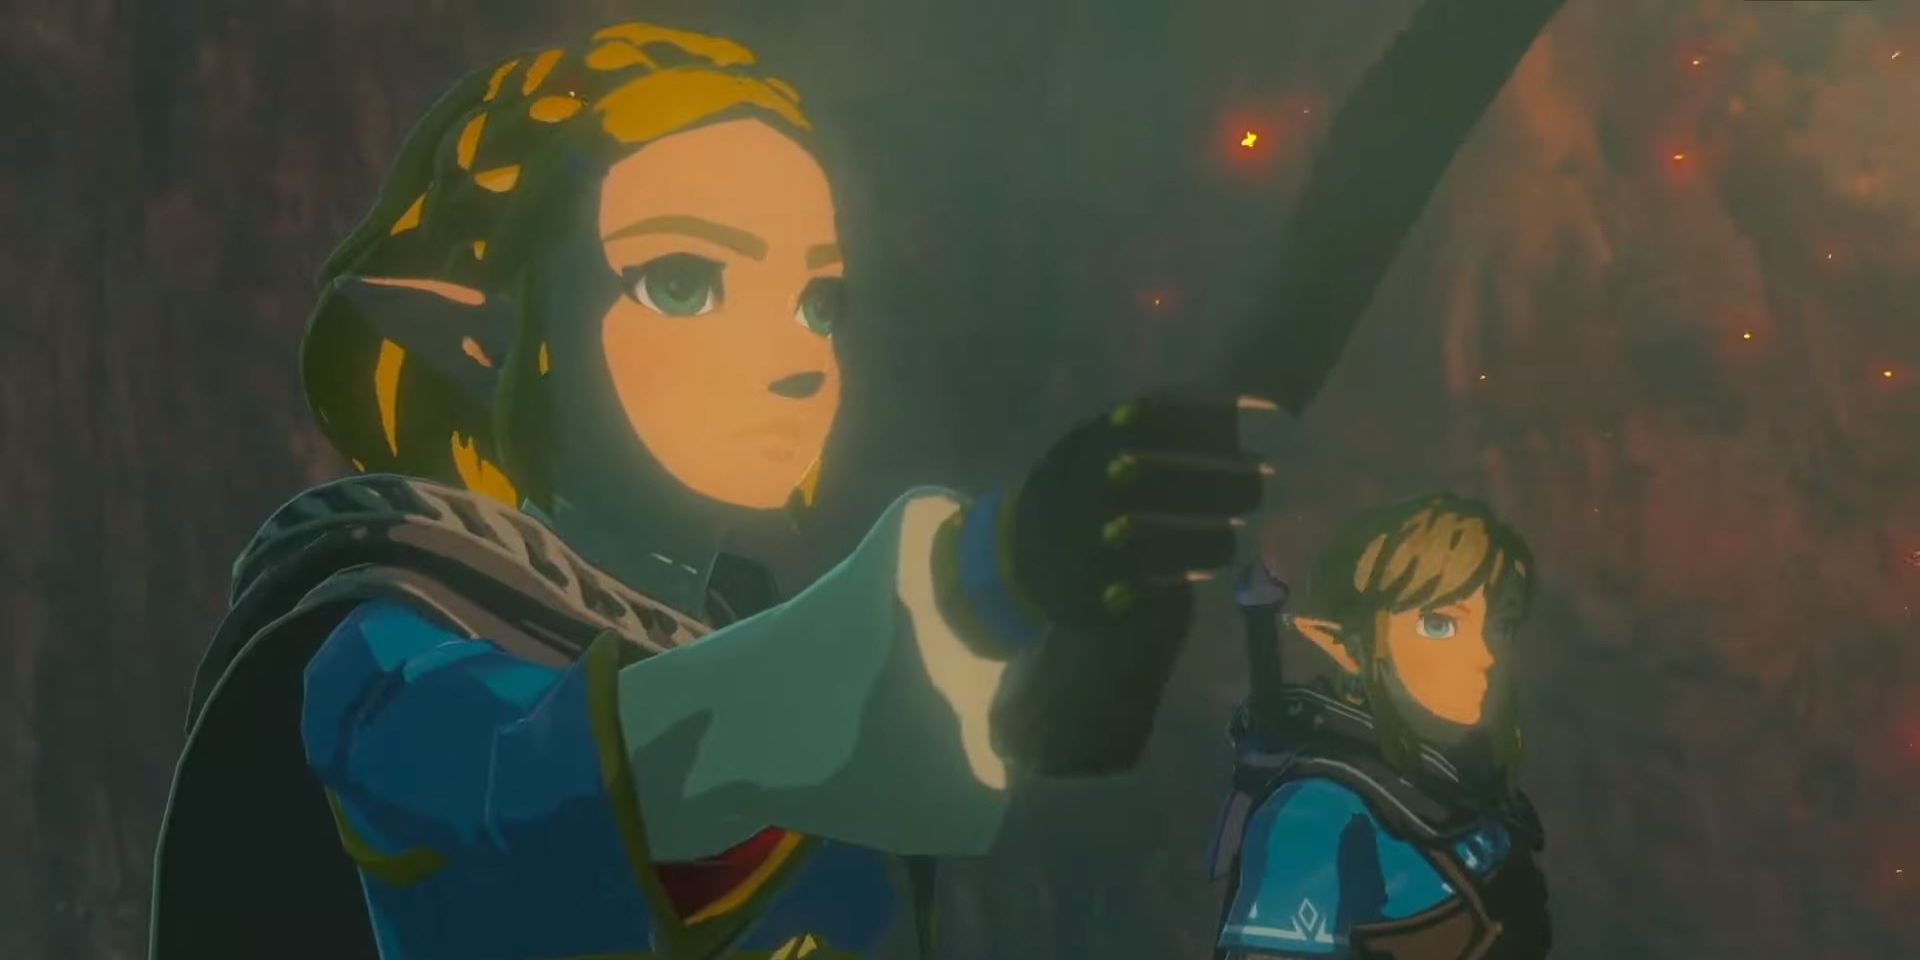 Link in Zelda in the reveal trailer for Nintendo's sequel to The Legend of Zelda Breath of the Wild.